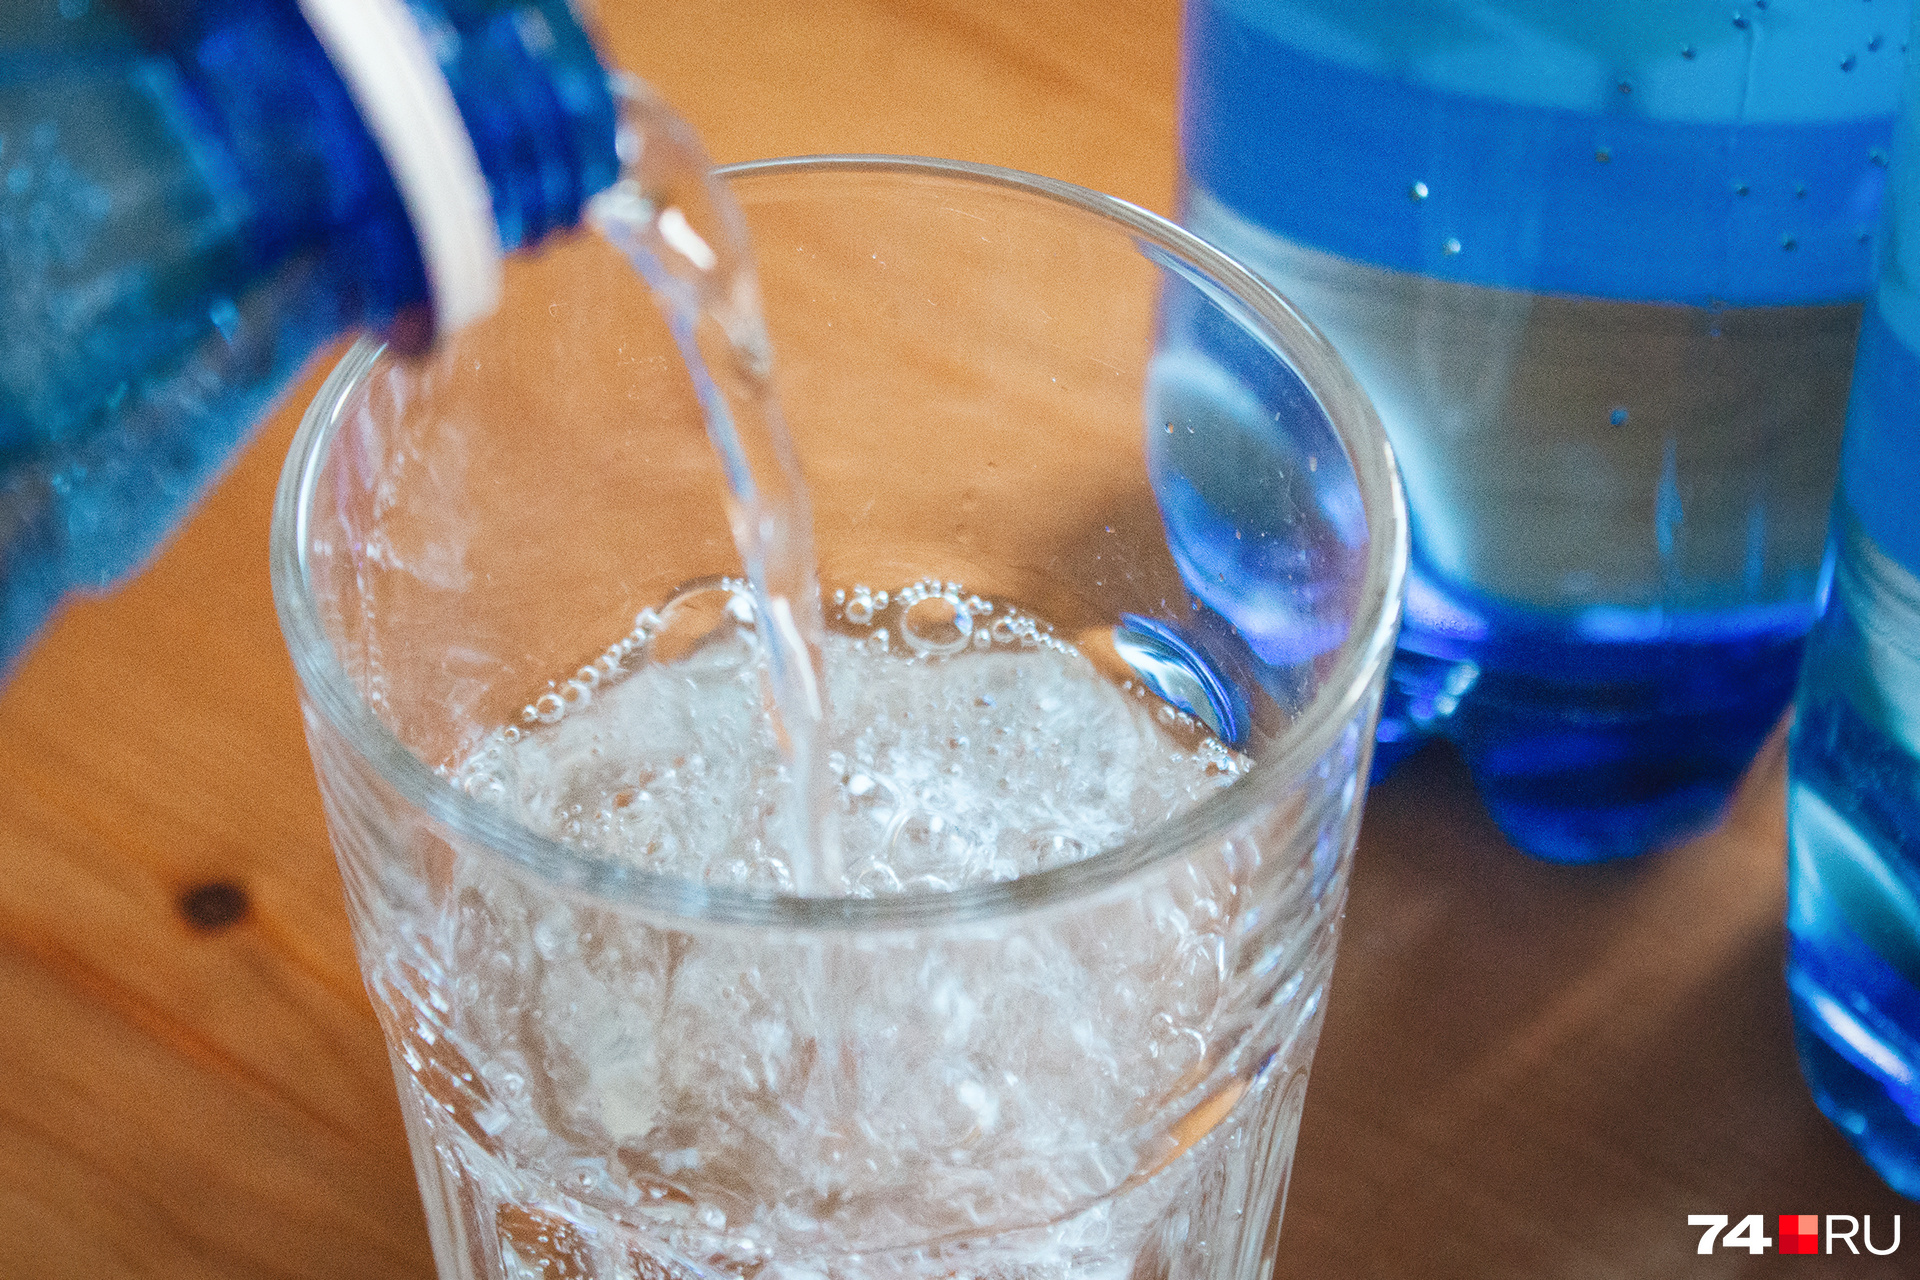 Чтобы помочь организму, человек должен пить достаточно воды